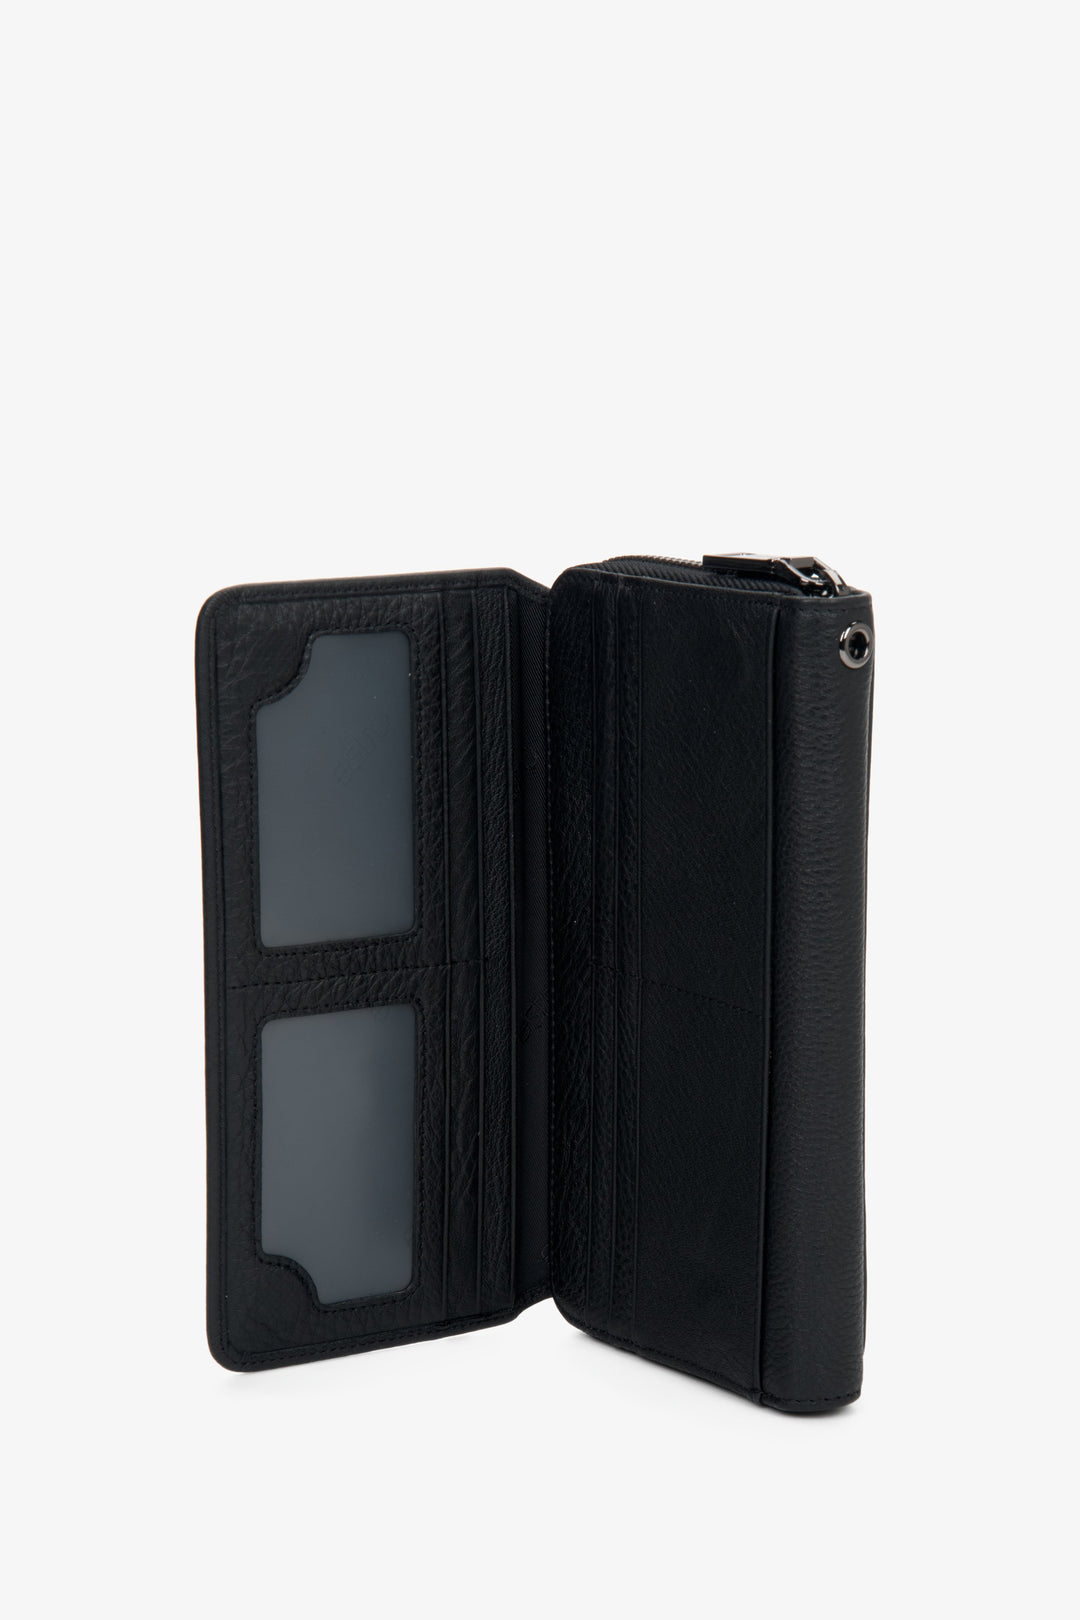 Estro men's black wallet - interior of the model.